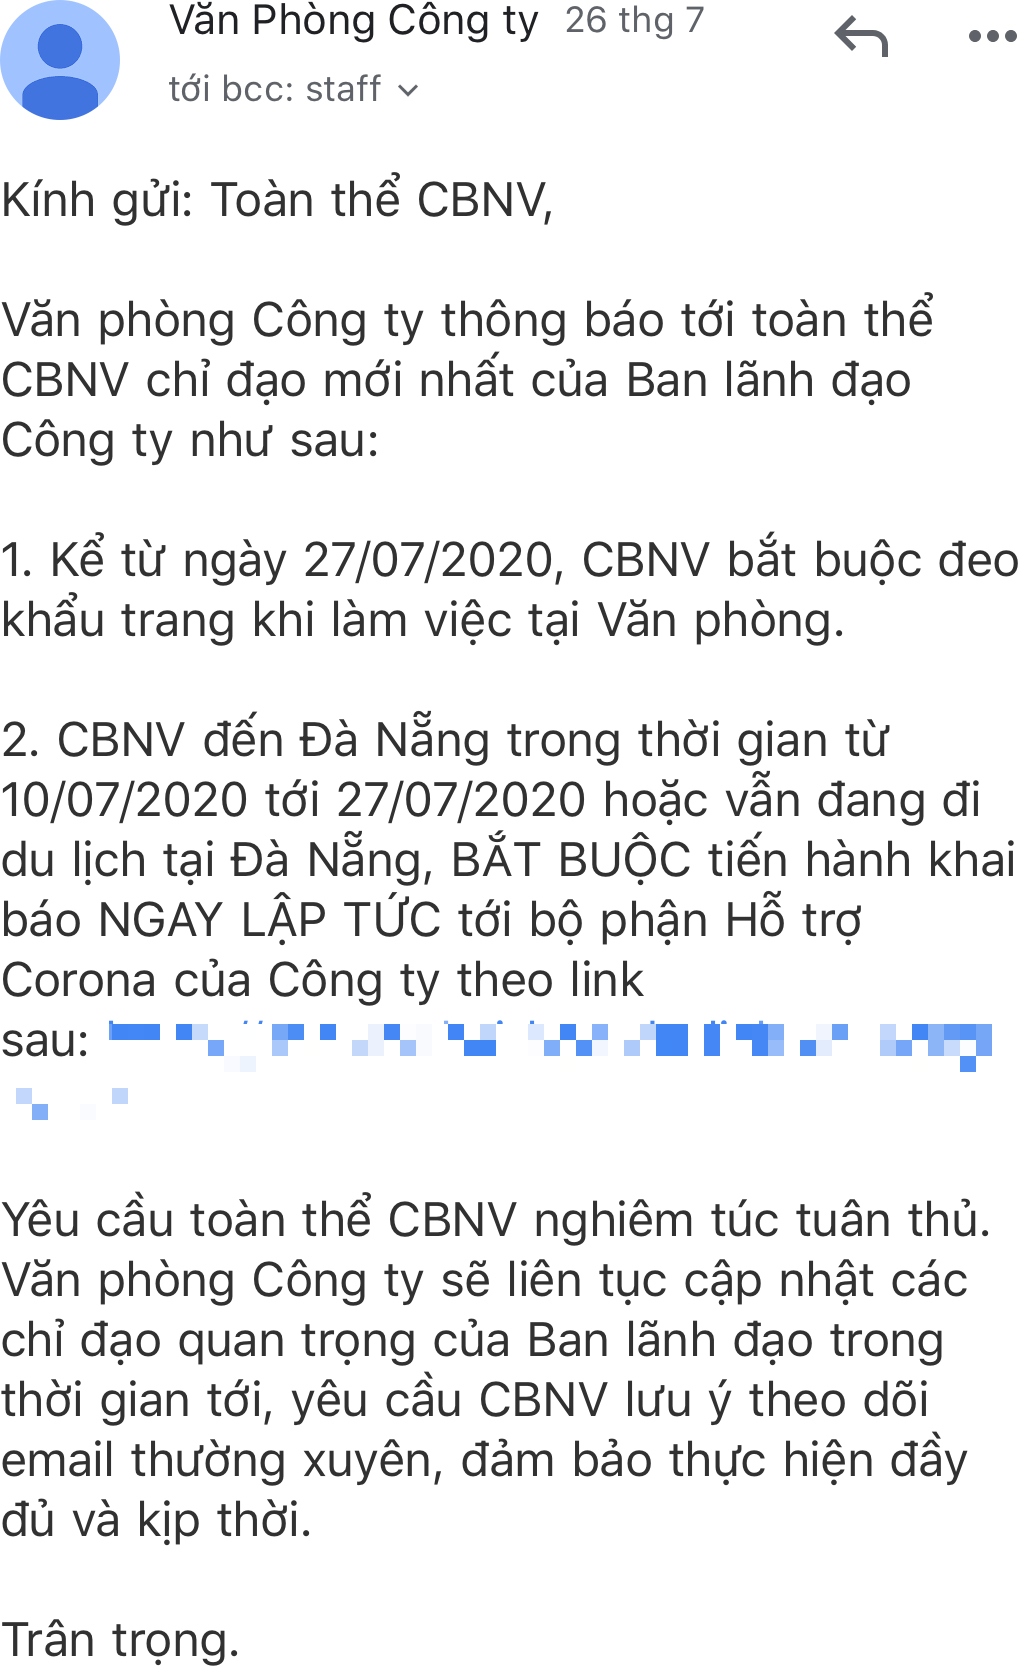 Sau ca bệnh thứ 416, một công ty truyền thông ở Hà Nội nghiêm túc chủ động đeo khẩu trang tại văn phòng, yêu cầu nhân viên du lịch Đà Nẵng khai báo tình trạng sức khỏe - Ảnh 1.